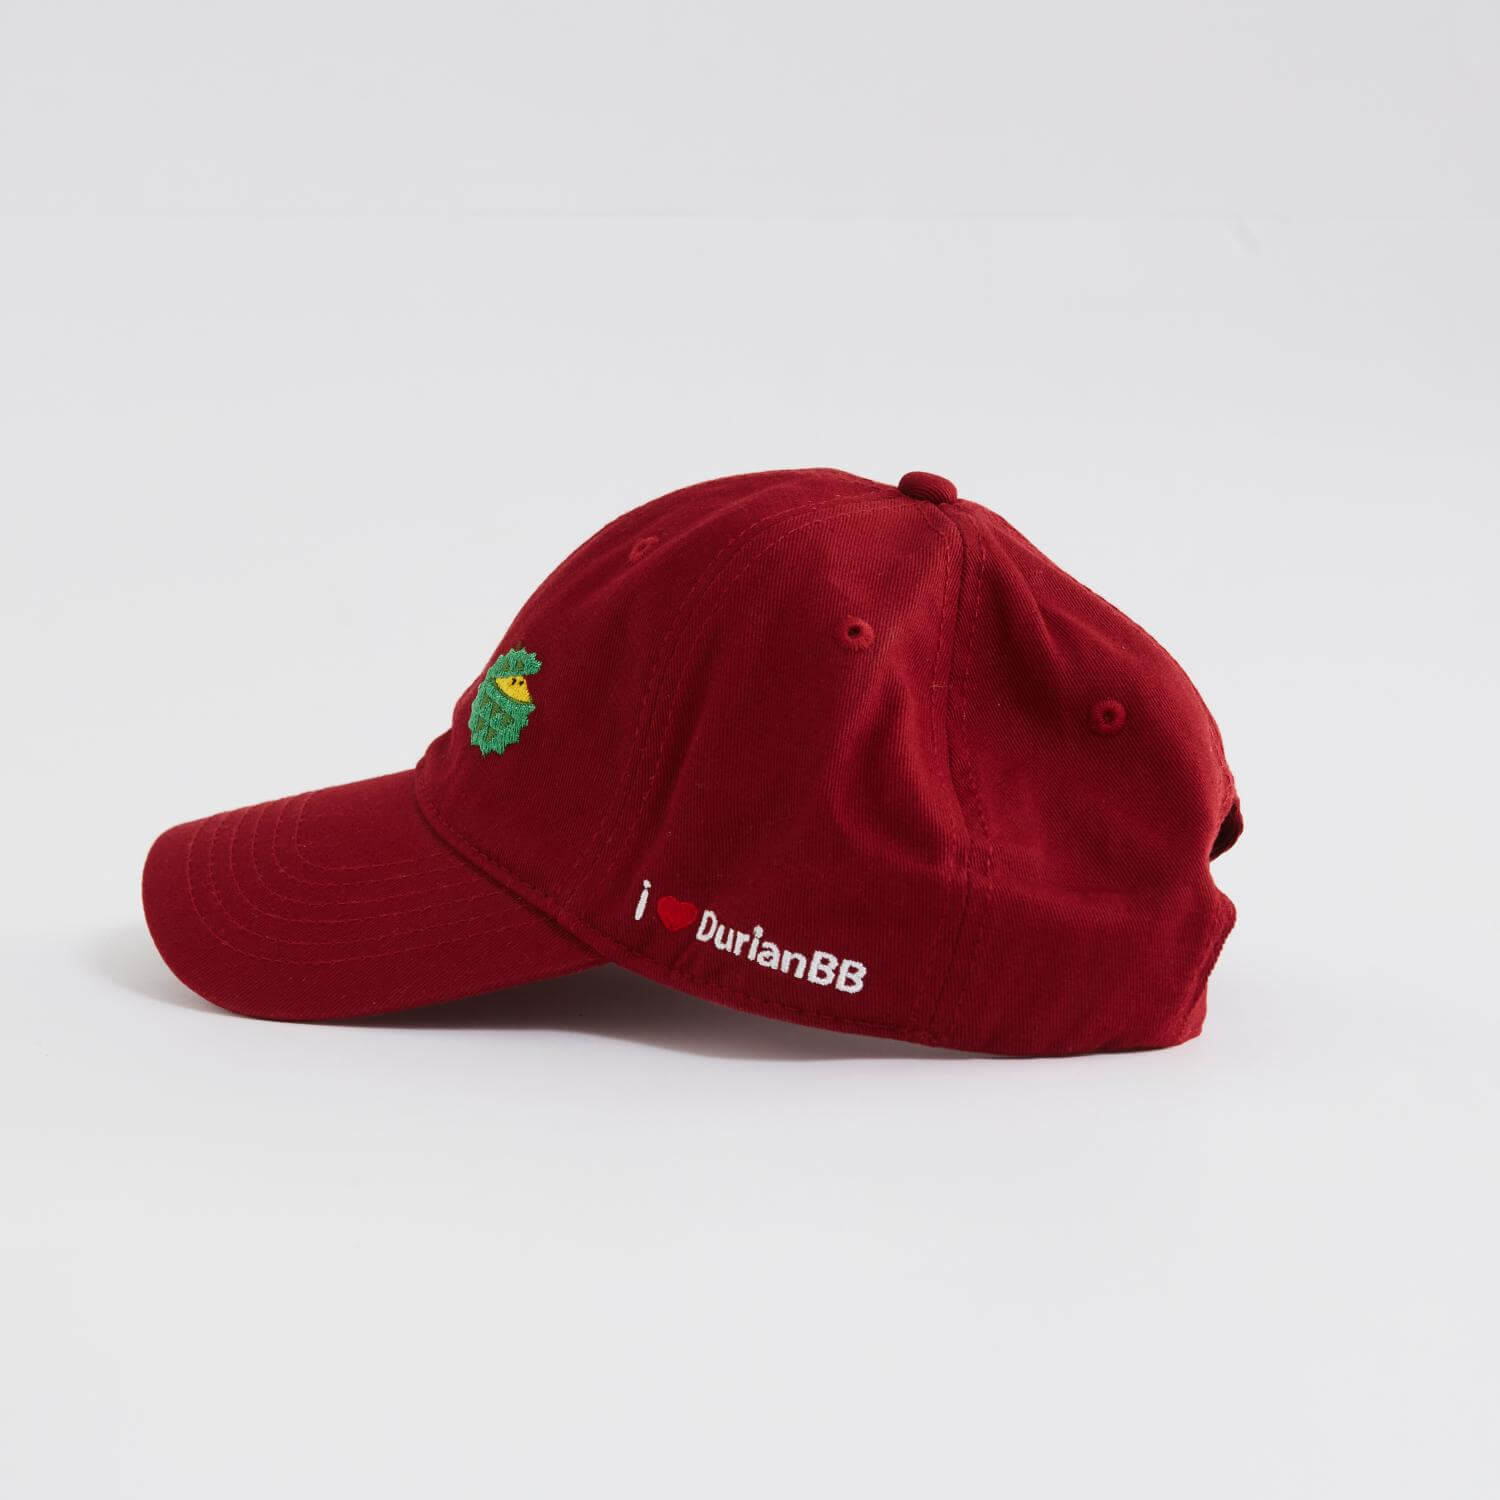 DurianBB Baseball Cap Merchandise Souvenir Red 2